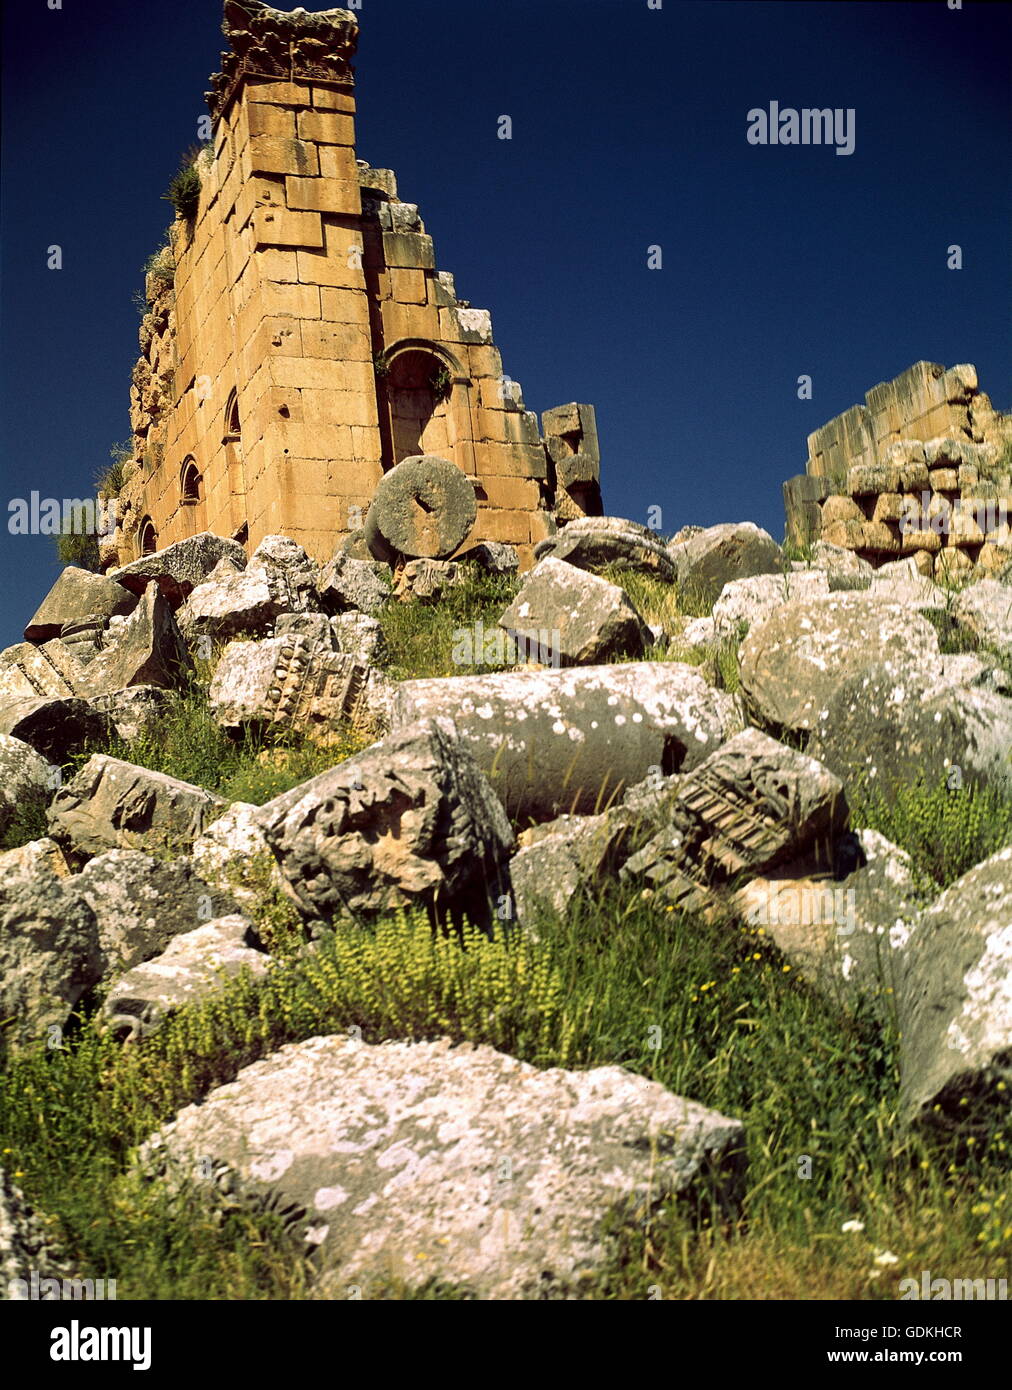 Geografia / viaggi, Giordania, al quasr Allabat, frontiera romana fortificata: 1° / 2° secolo D.C. rovina, Foto Stock